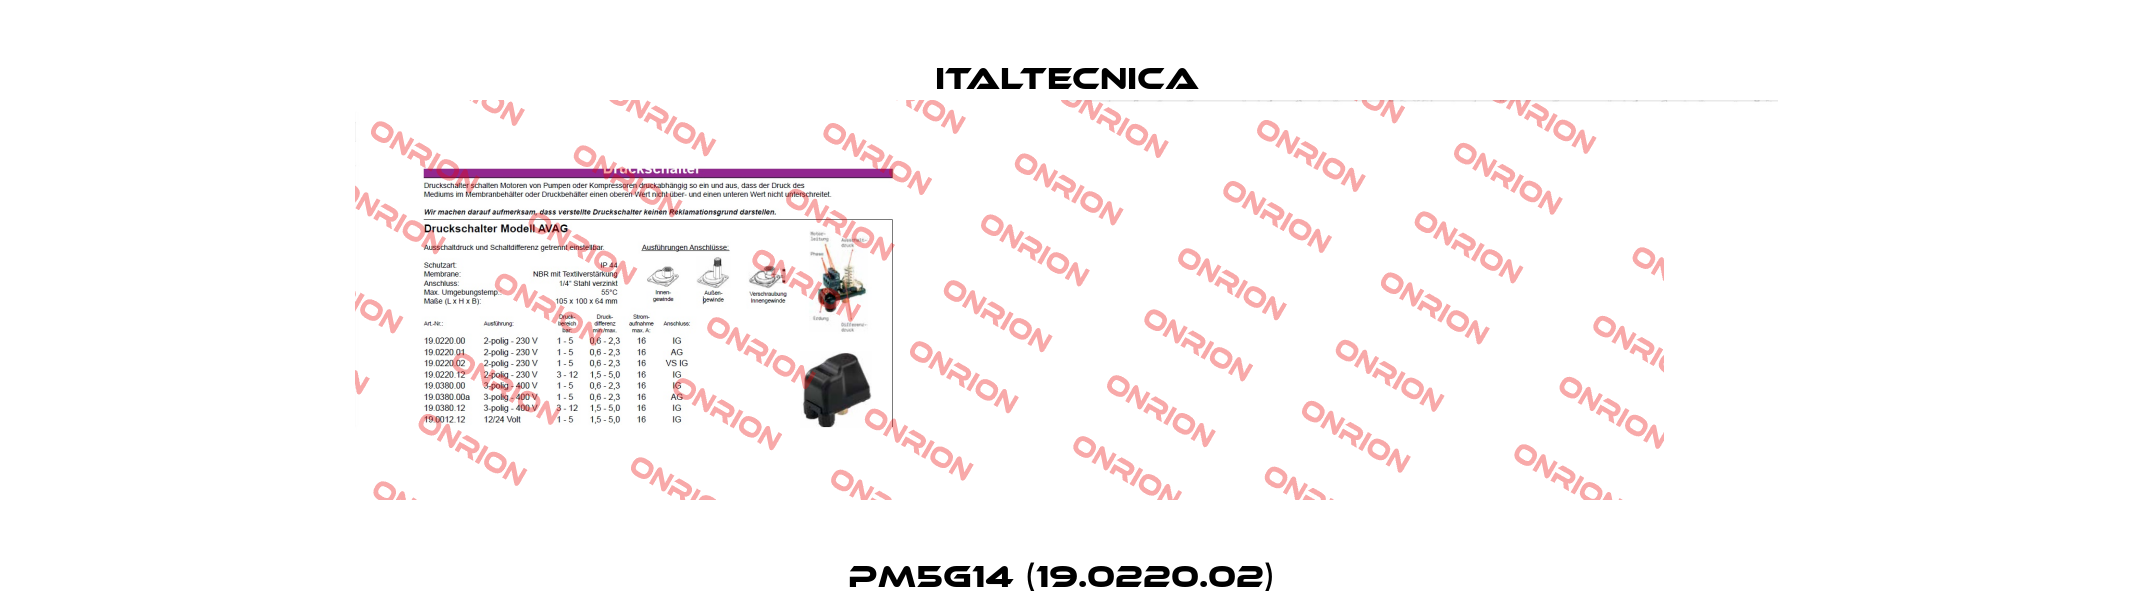 PM5G14 (19.0220.02)  Italtecnica